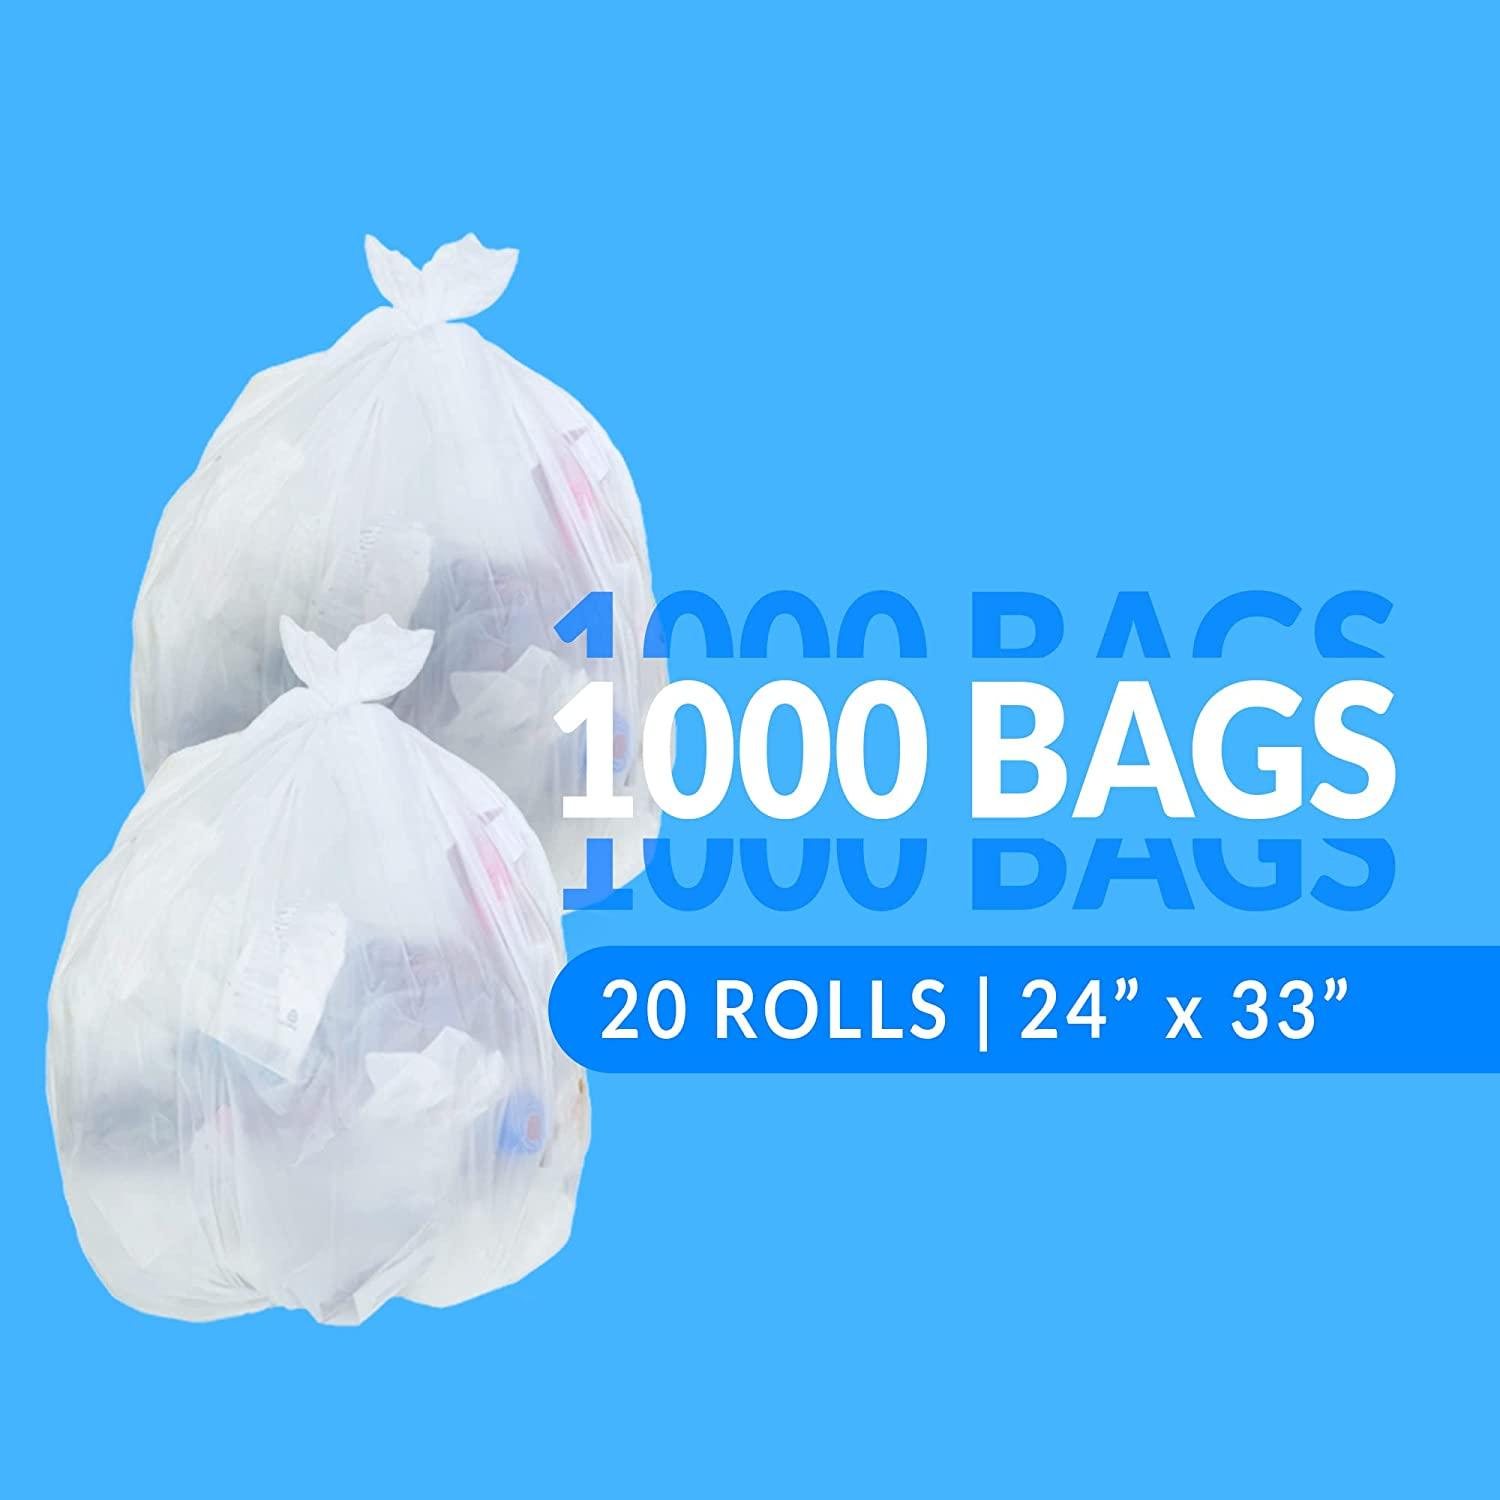 Garbage Bags 70х110cm 120l at a price of 3.59 lv. online 